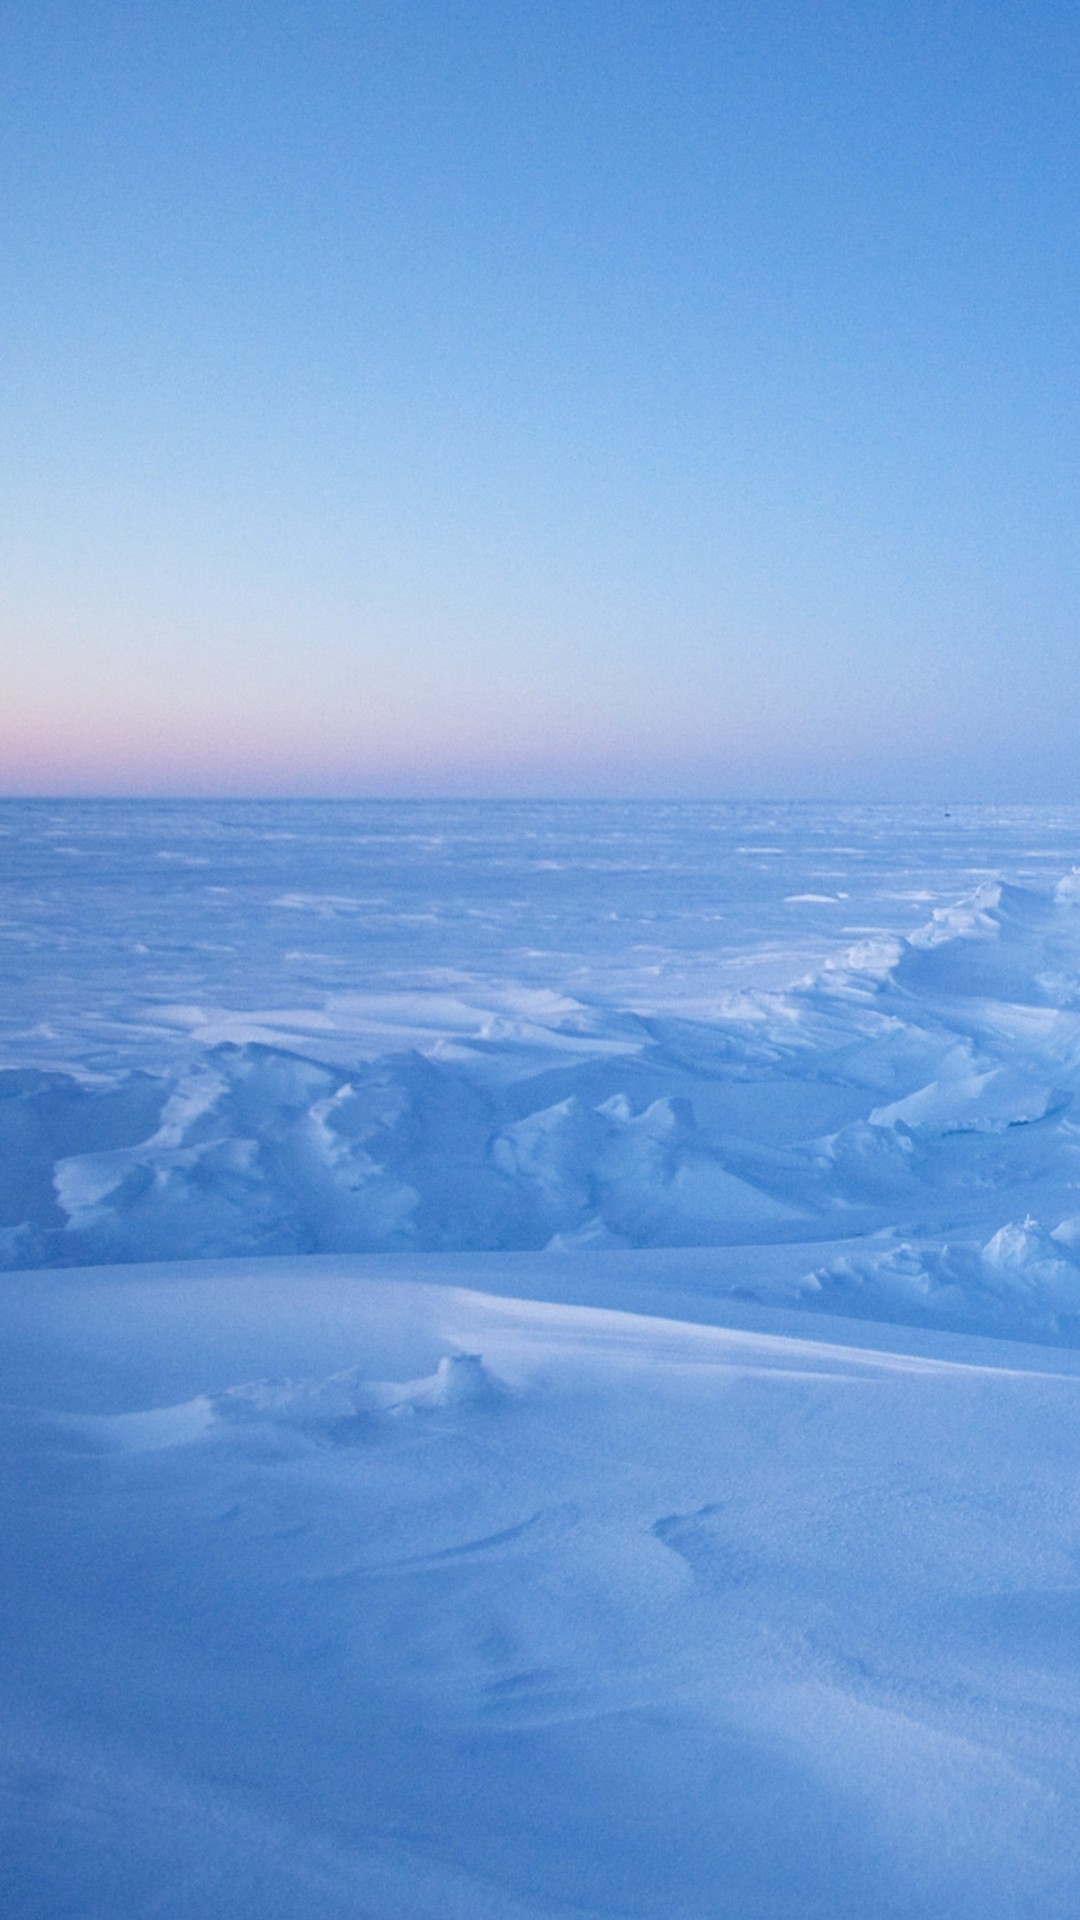 north pole wallpaper,sky,blue,arctic ocean,arctic,natural environment